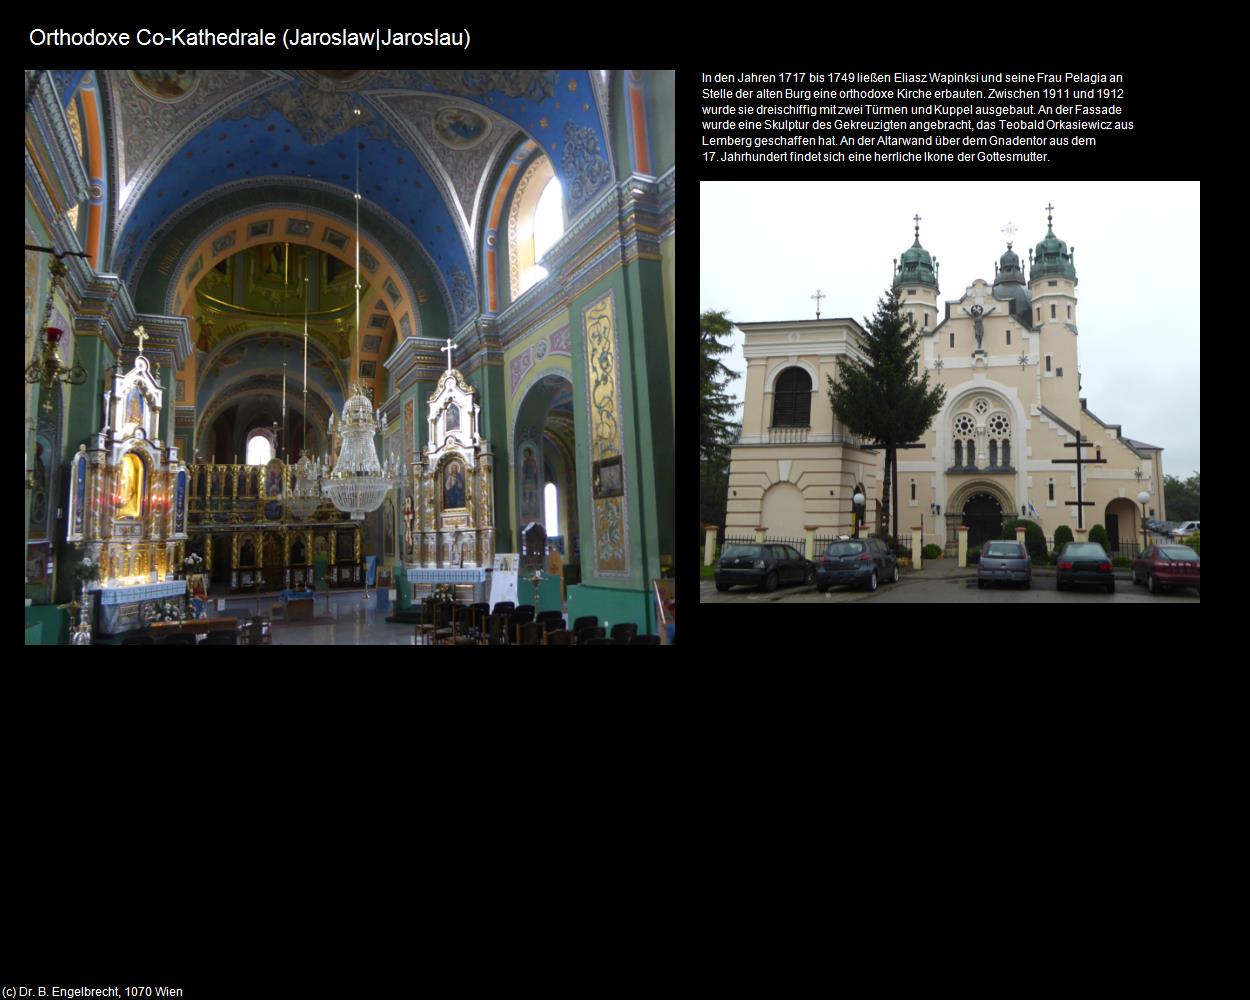 Orthodoxe Co-Kathedrale (Jaroslaw|Jaroslau) in POLEN-Galizien